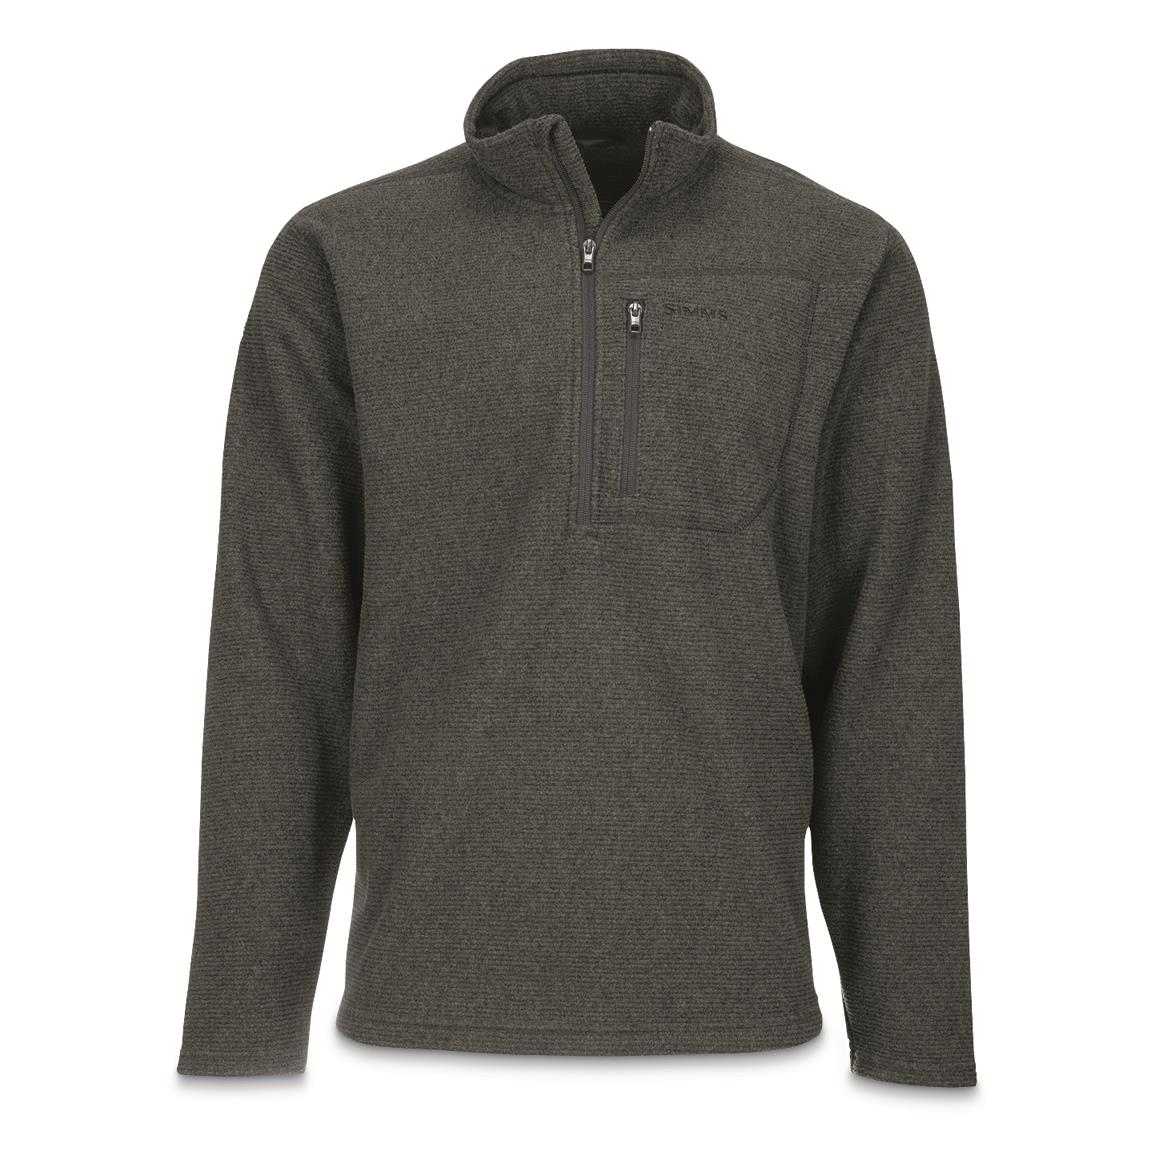 Simms Men's Rivershed Quarter-zip Fleece Sweater - 717238, Sweatshirts ...